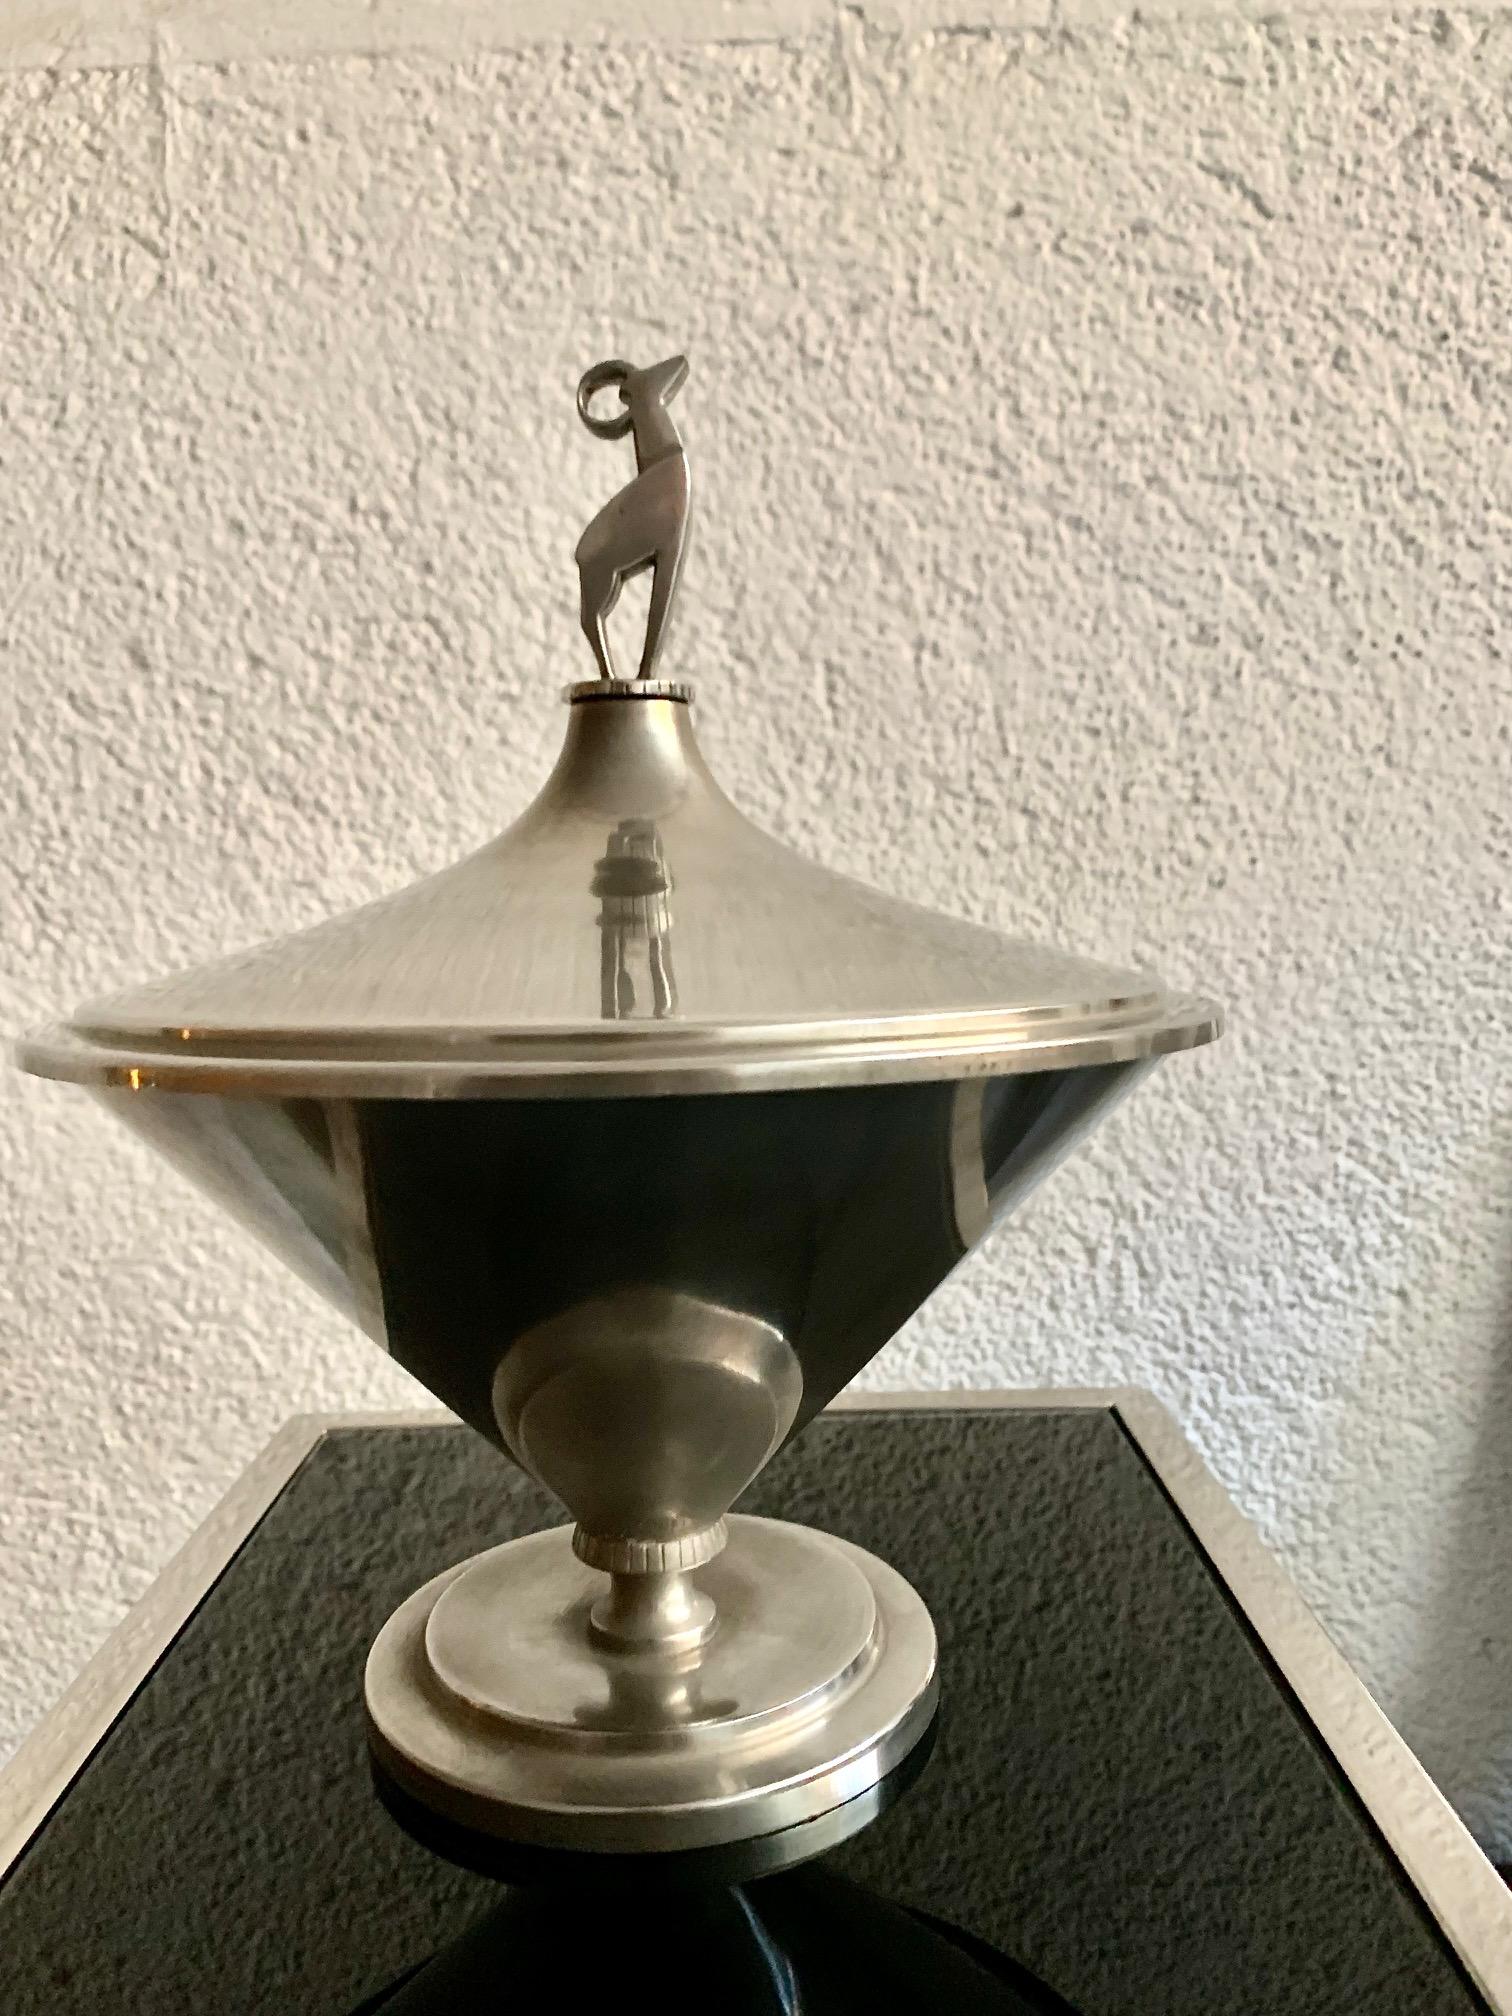 Vase ou urne en étain Art Déco suédois, c'est une pièce spéciale avec une base dont le vase part d'une forme conique, il a un couvercle surmonté d'une figure représentant un animal ressemblant à un cerf, Signé en bas par Tyringe Konsthanverk.